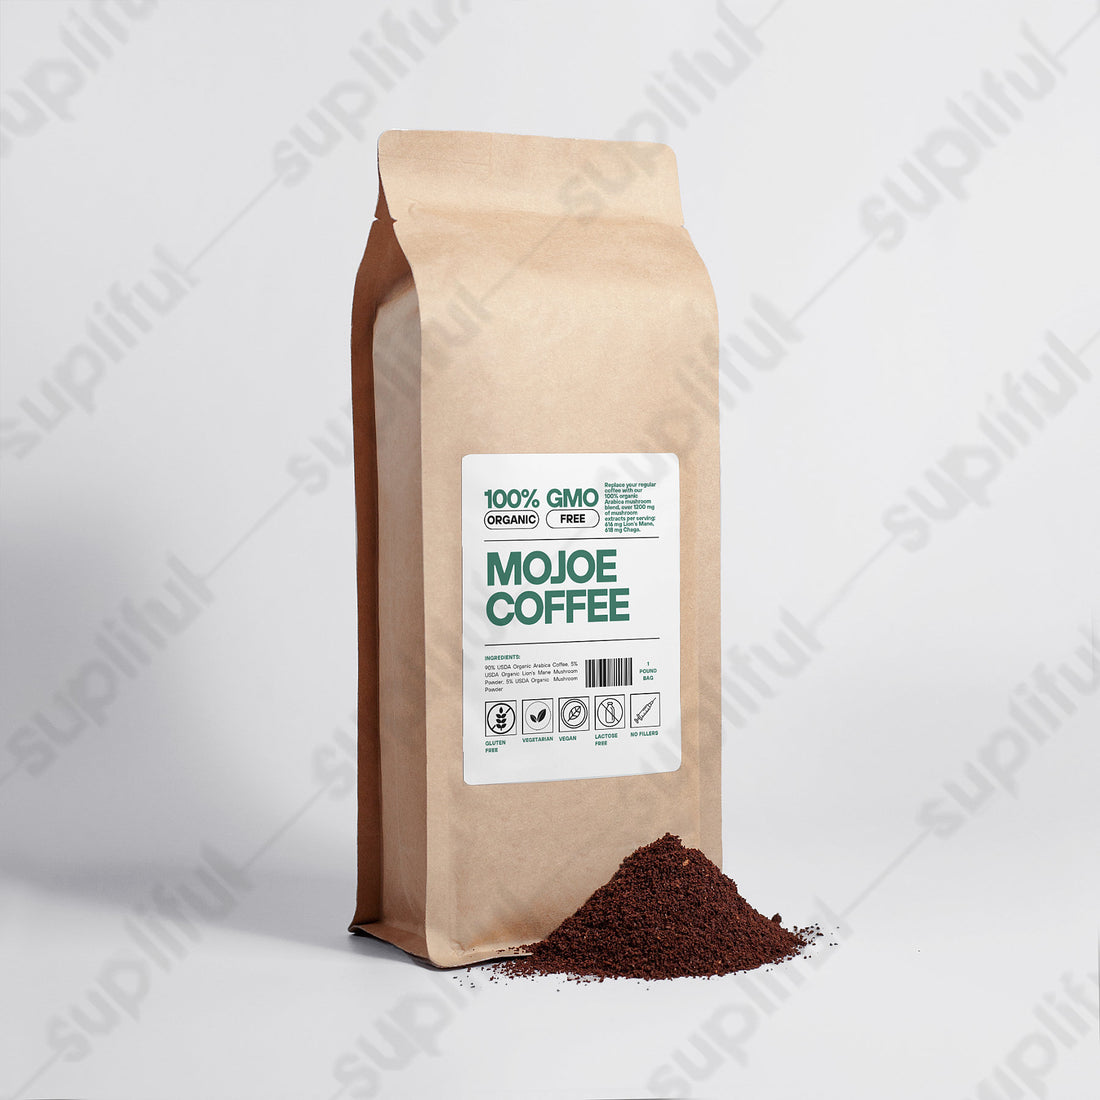 MOJOE COFFEE - Lion's Mane, Chaga, & Coffee Blend (16oz)